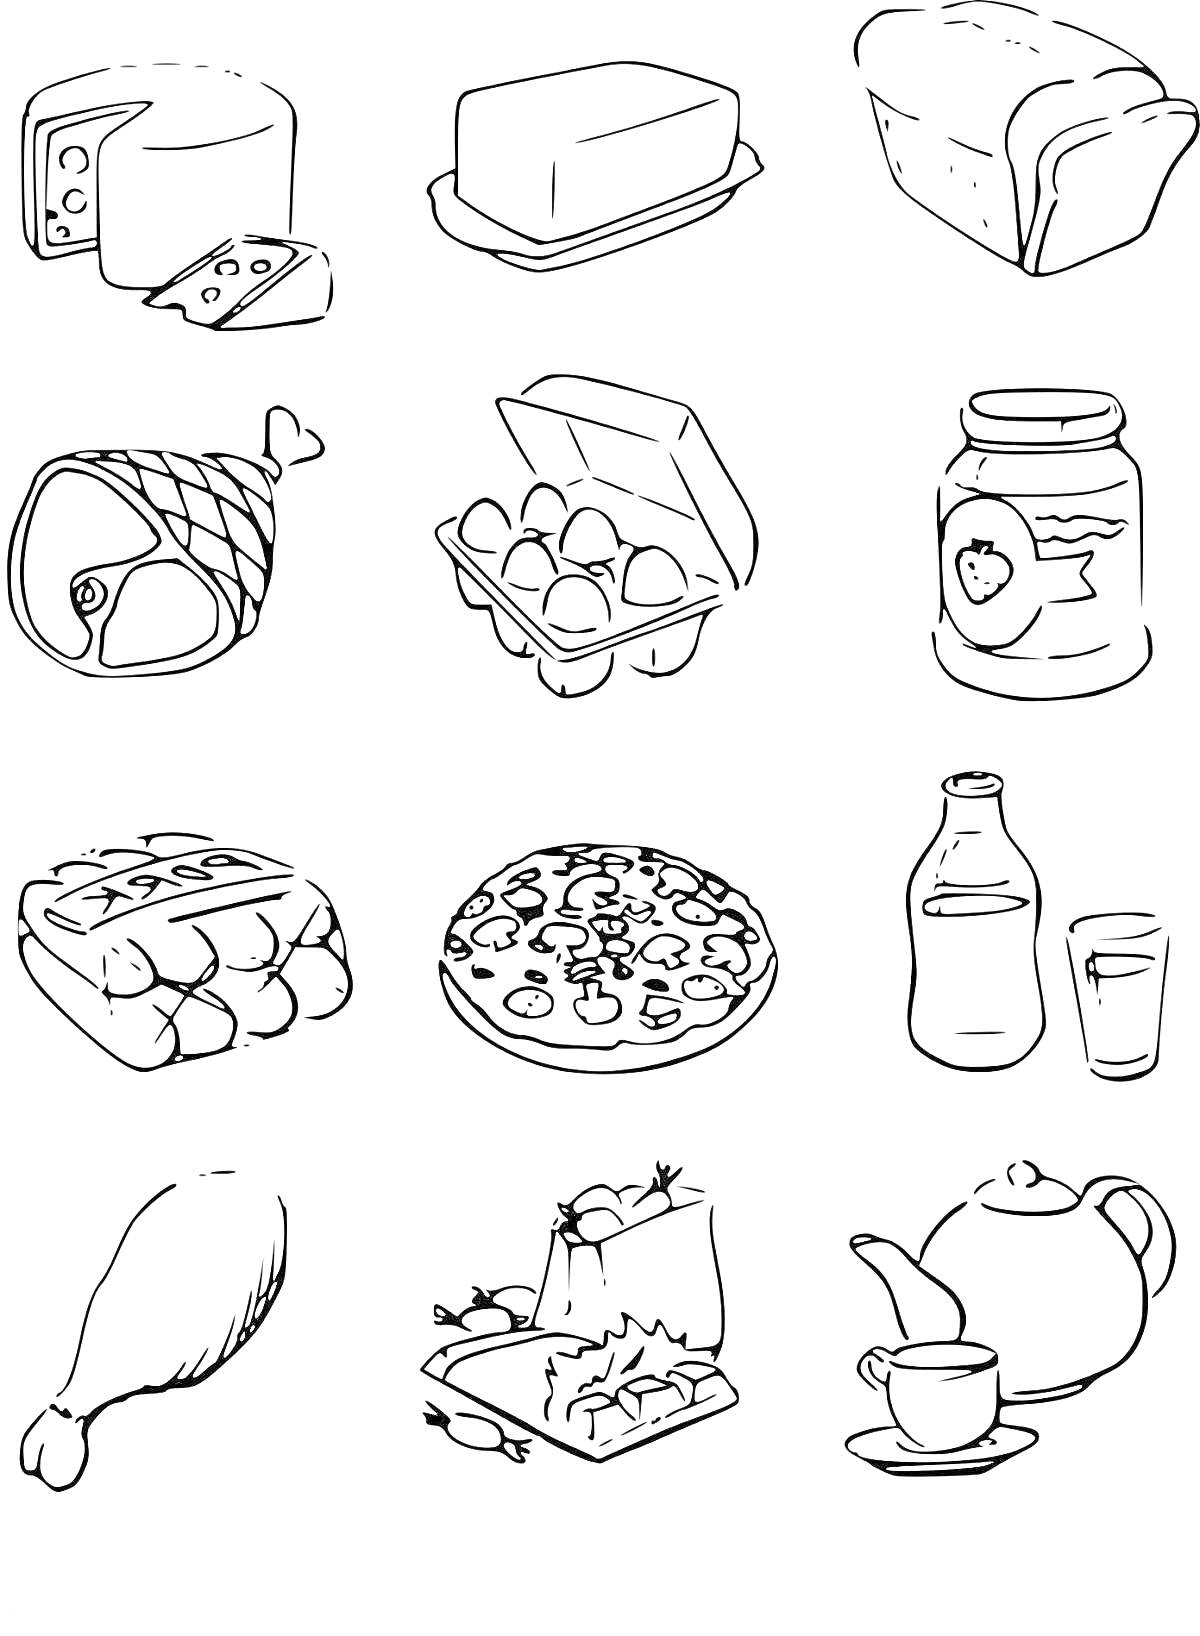 Раскраска сыры, масло, хлеб, ветчина, яйца, банка варенья, булочки, пицца, бутылка сока и стакан, куриный окорочок, нарезанные овощи, чайник и чашка чая